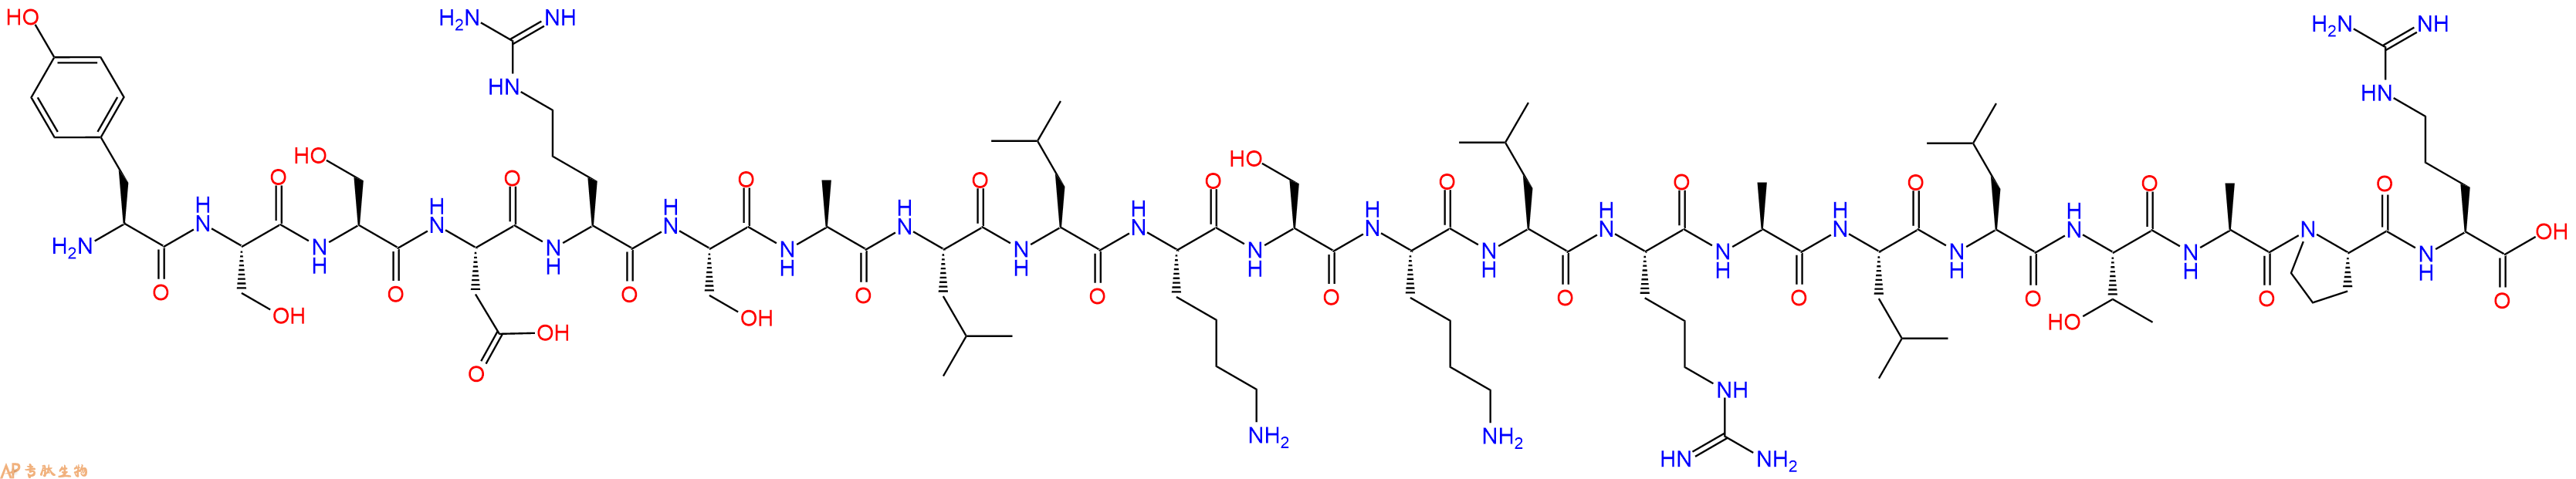 专肽生物产品(Tyr0)-Prepro-Atrial Natriuretic Factor(104-123),309245-24-7